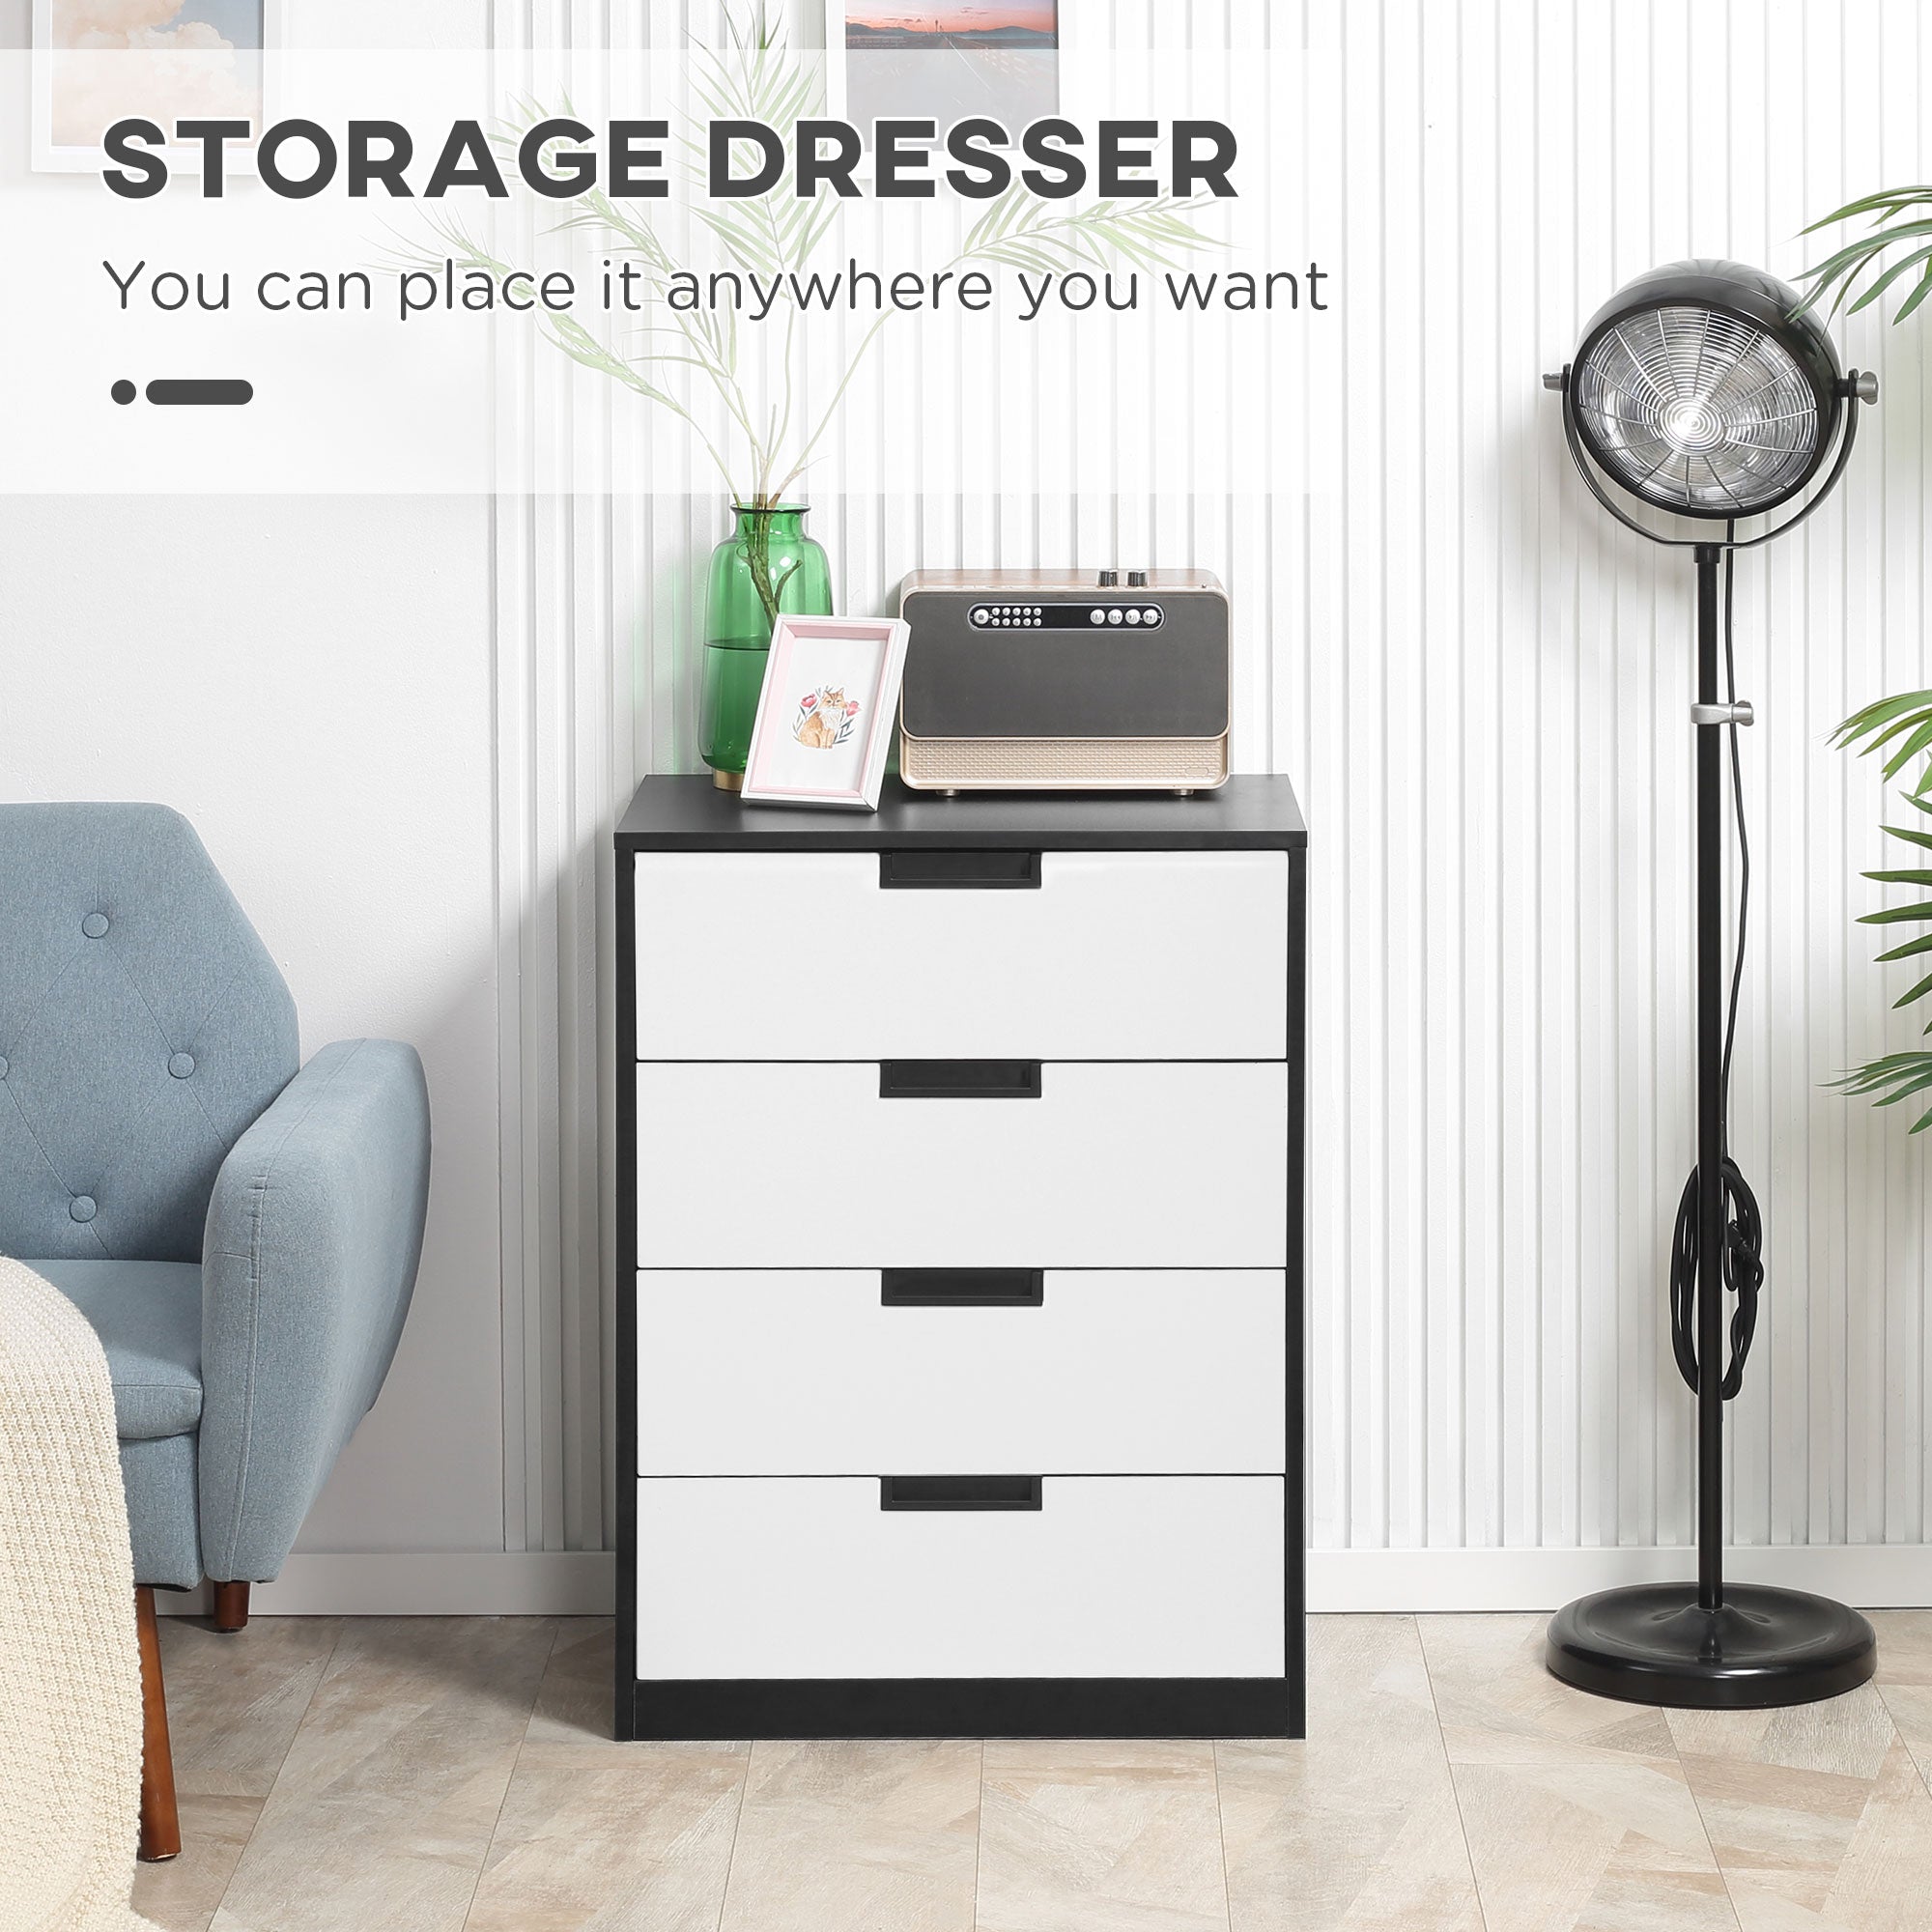 Drawer Chest, 4-Drawer Storage Cabinet Organiser for Bedroom, Living Room, 60cmx40cmx80cm, White and Black-3